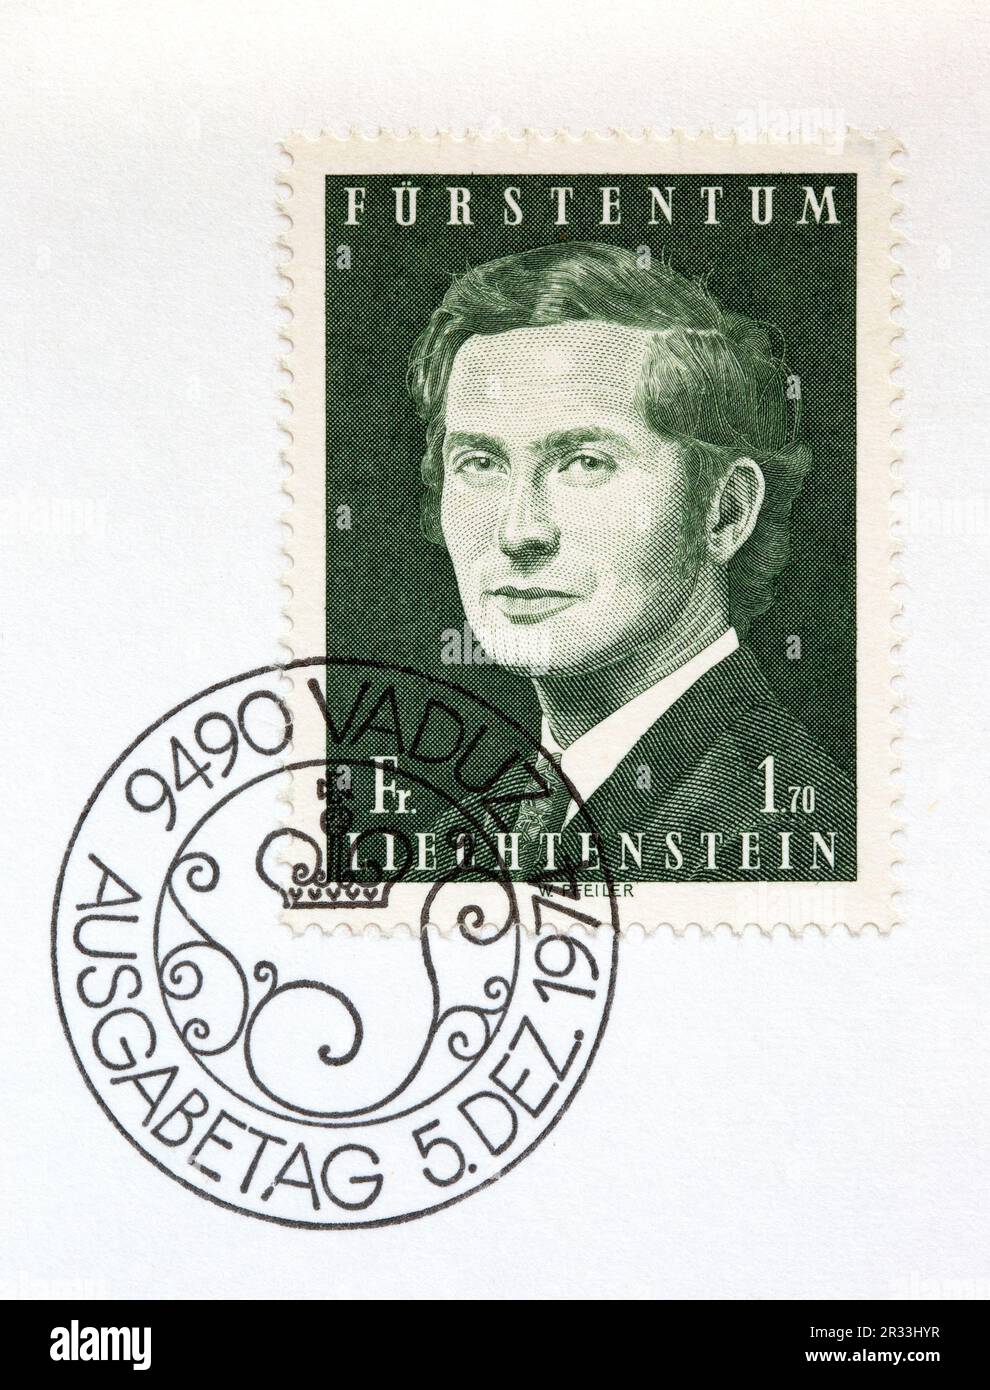 Le premier jour de délivrance couvre le timbre-poste avec un portrait du prince Hans-Adam II du Liechtenstein et une marque d'annulation de 5 décembre 1974, Vaduz. Banque D'Images